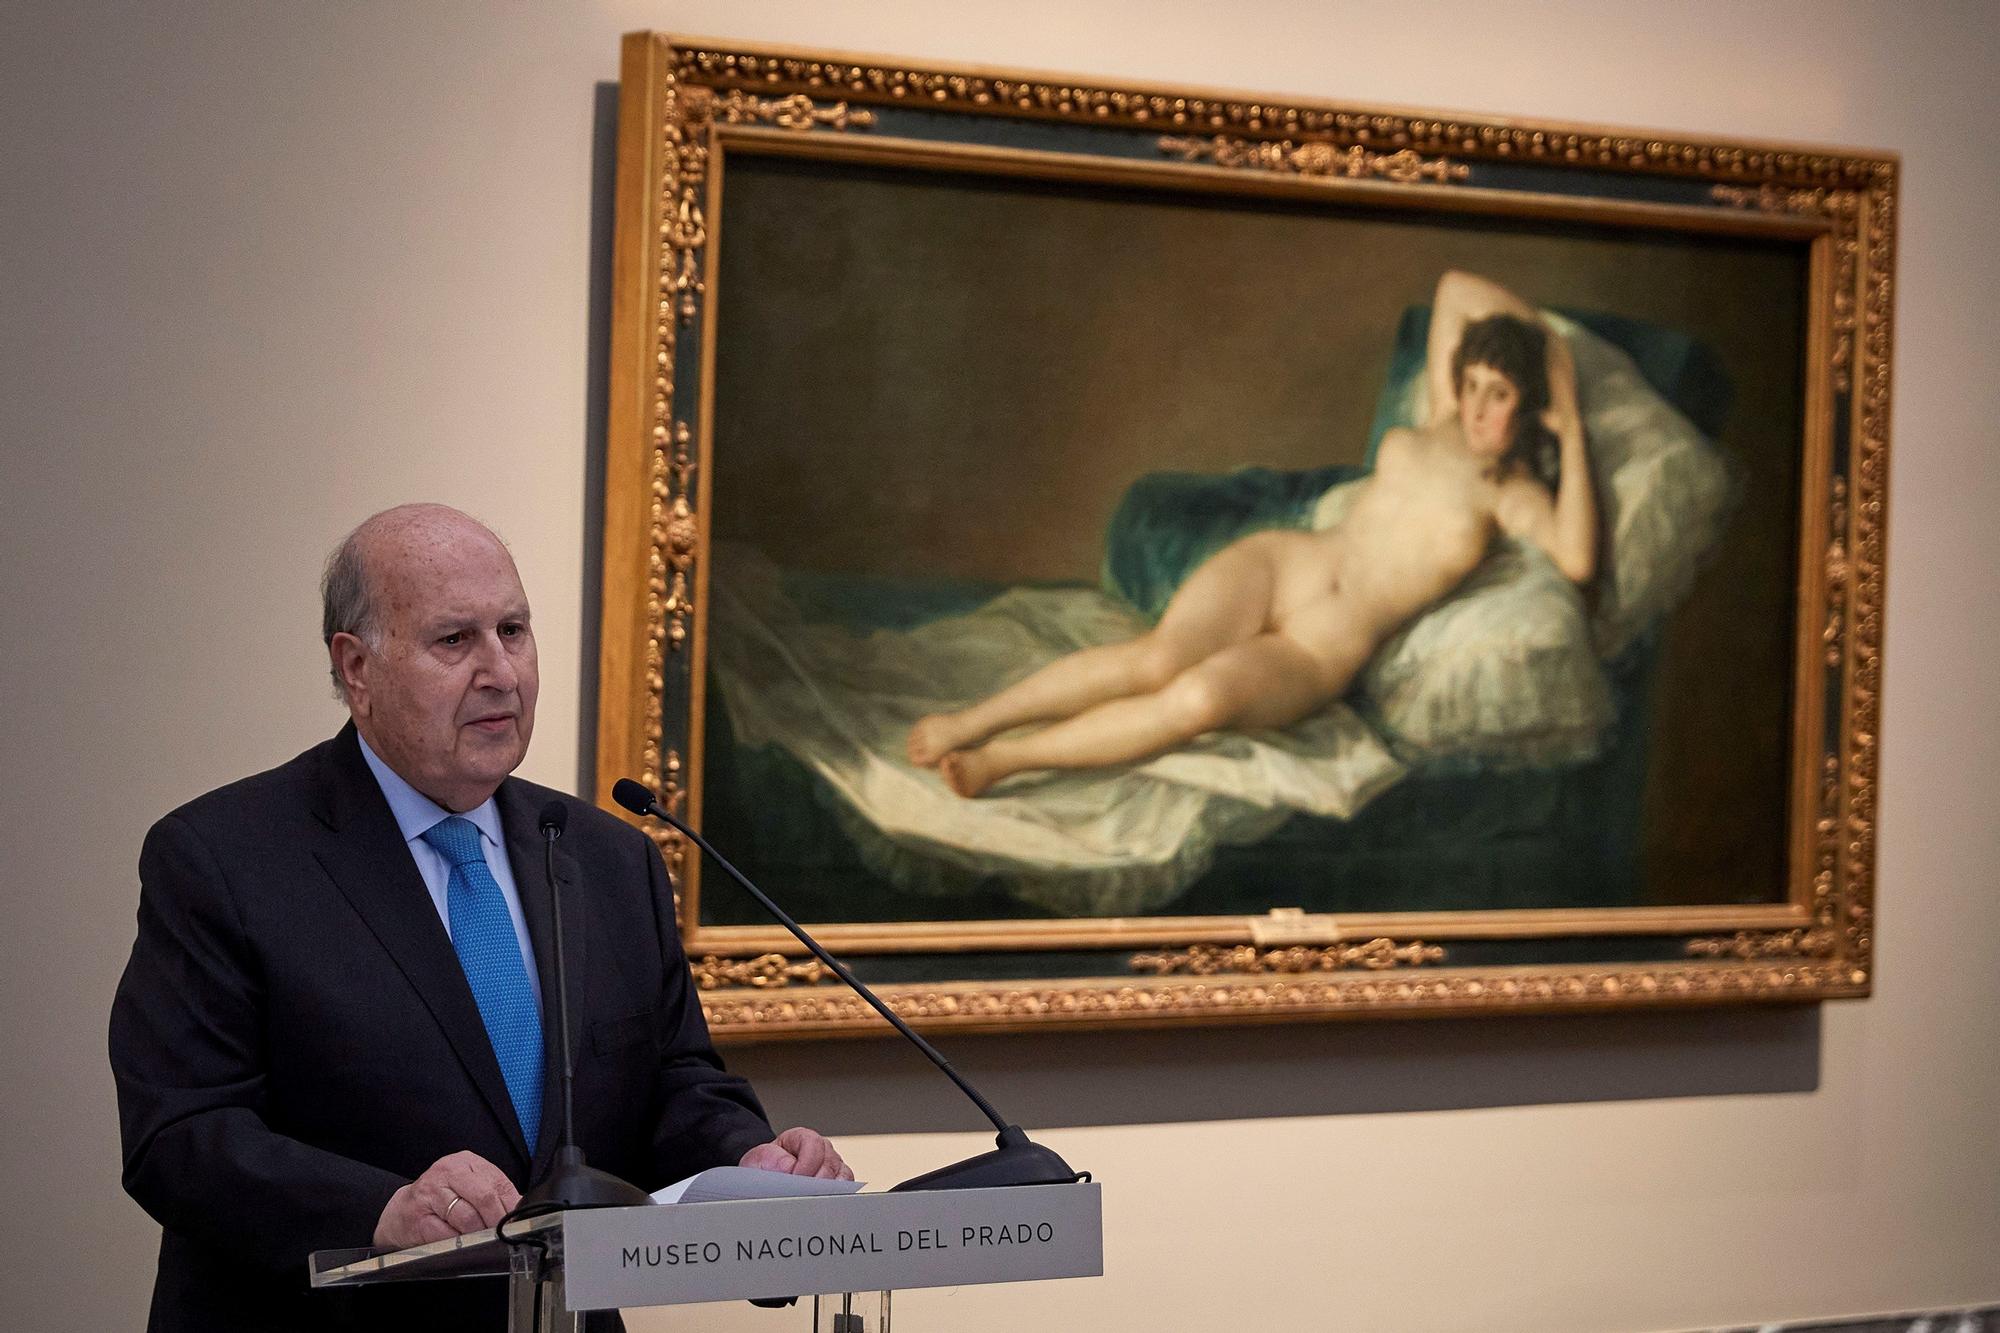 El presidente de la Fundación Tatiana Pérez de Guzmán el Bueno, Teodoro Sánchez-Ávila, frente a la Maja desnuda de Goya.